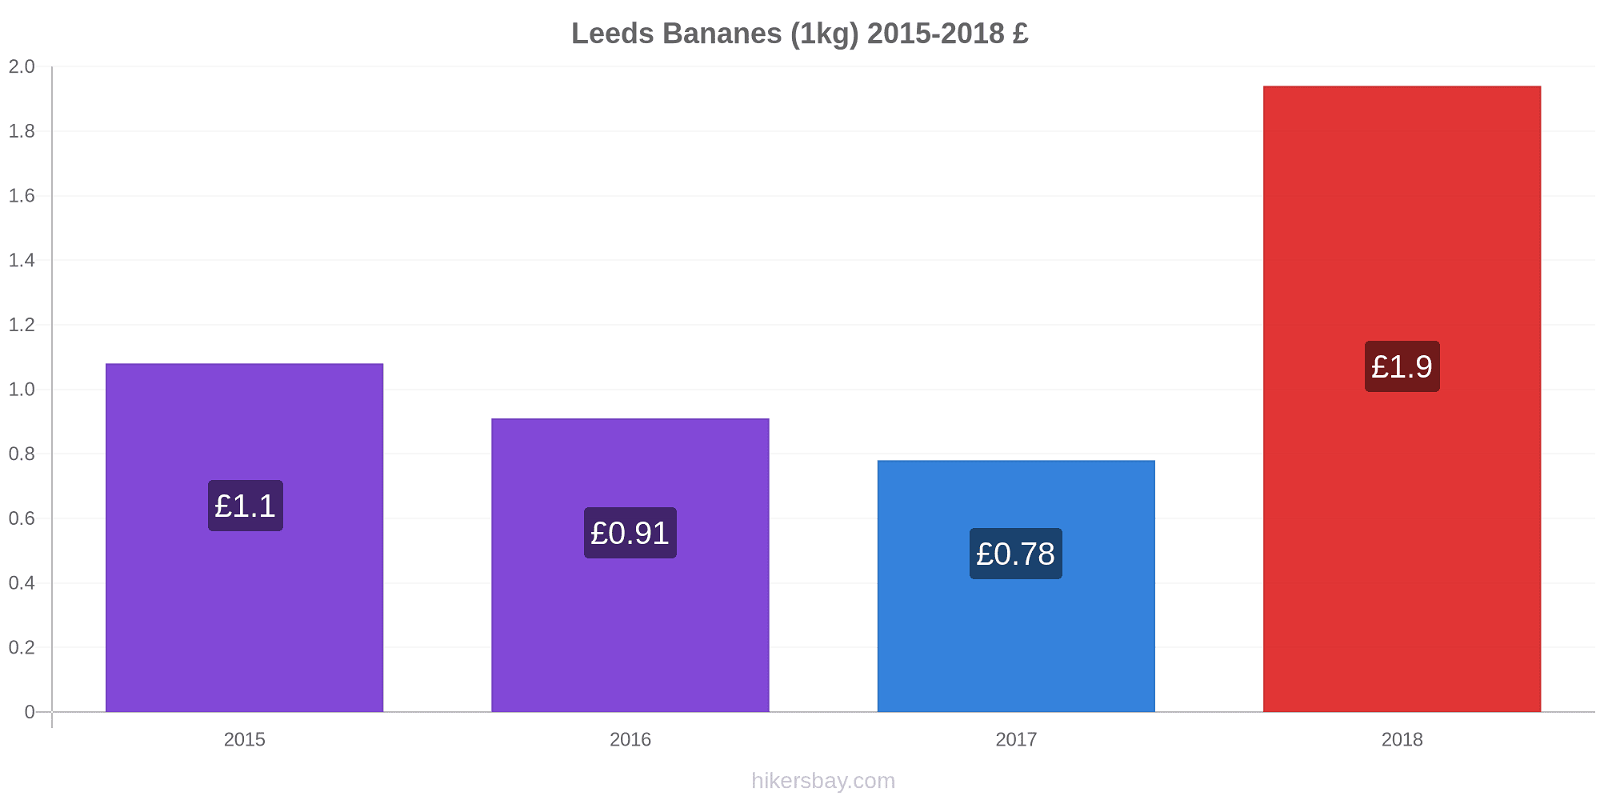 Leeds changements de prix Bananes (1kg) hikersbay.com